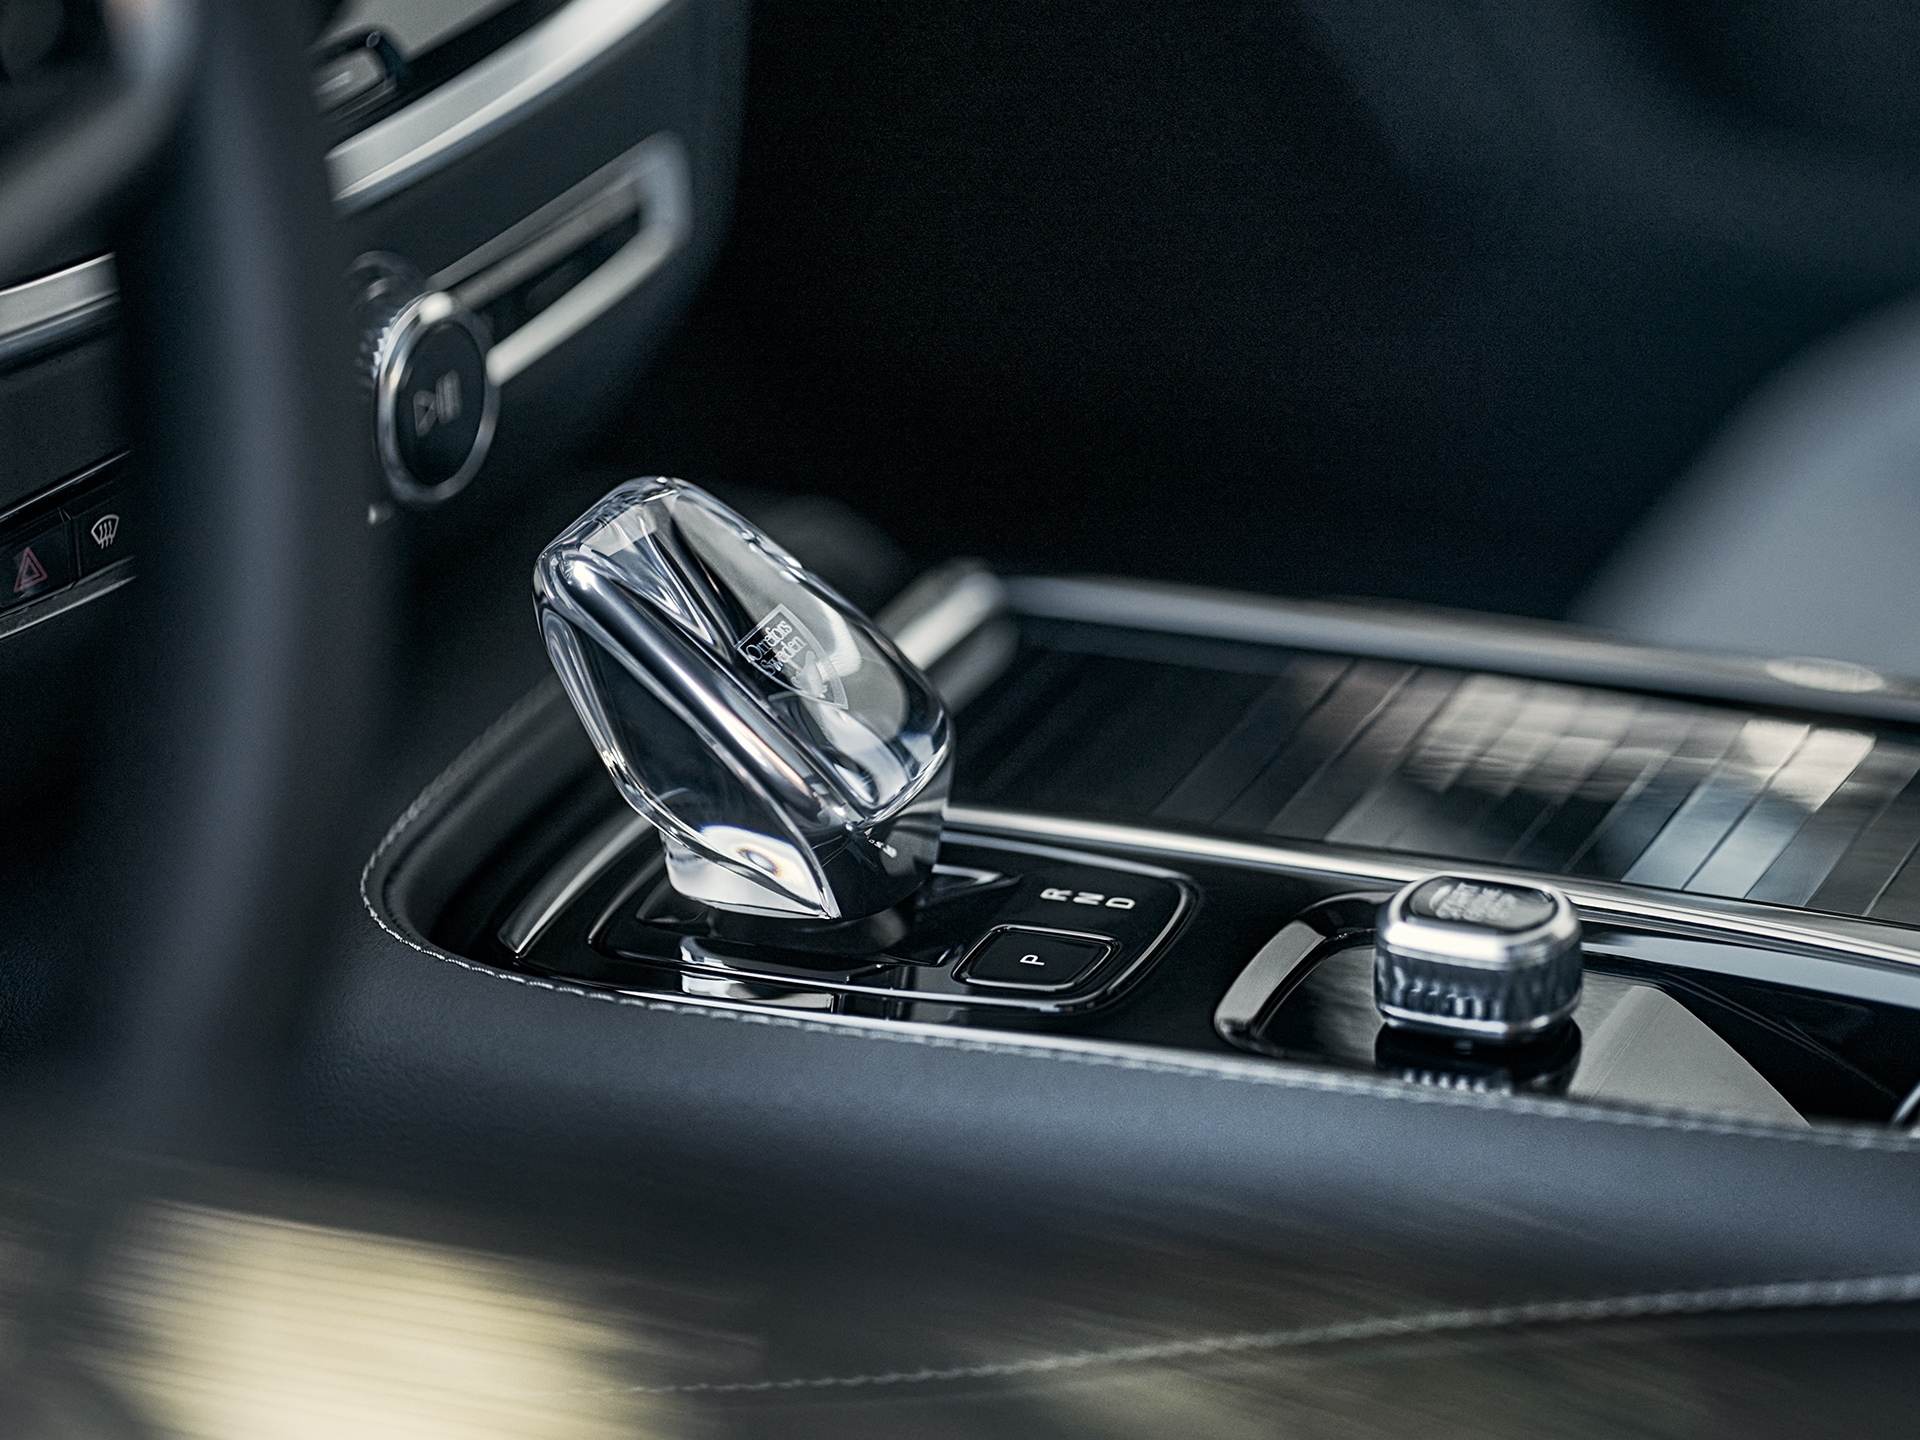 Botón de arranque y palanca de cambios de cristal en la consola central del Volvo S60 Recharge híbrido enchufable.